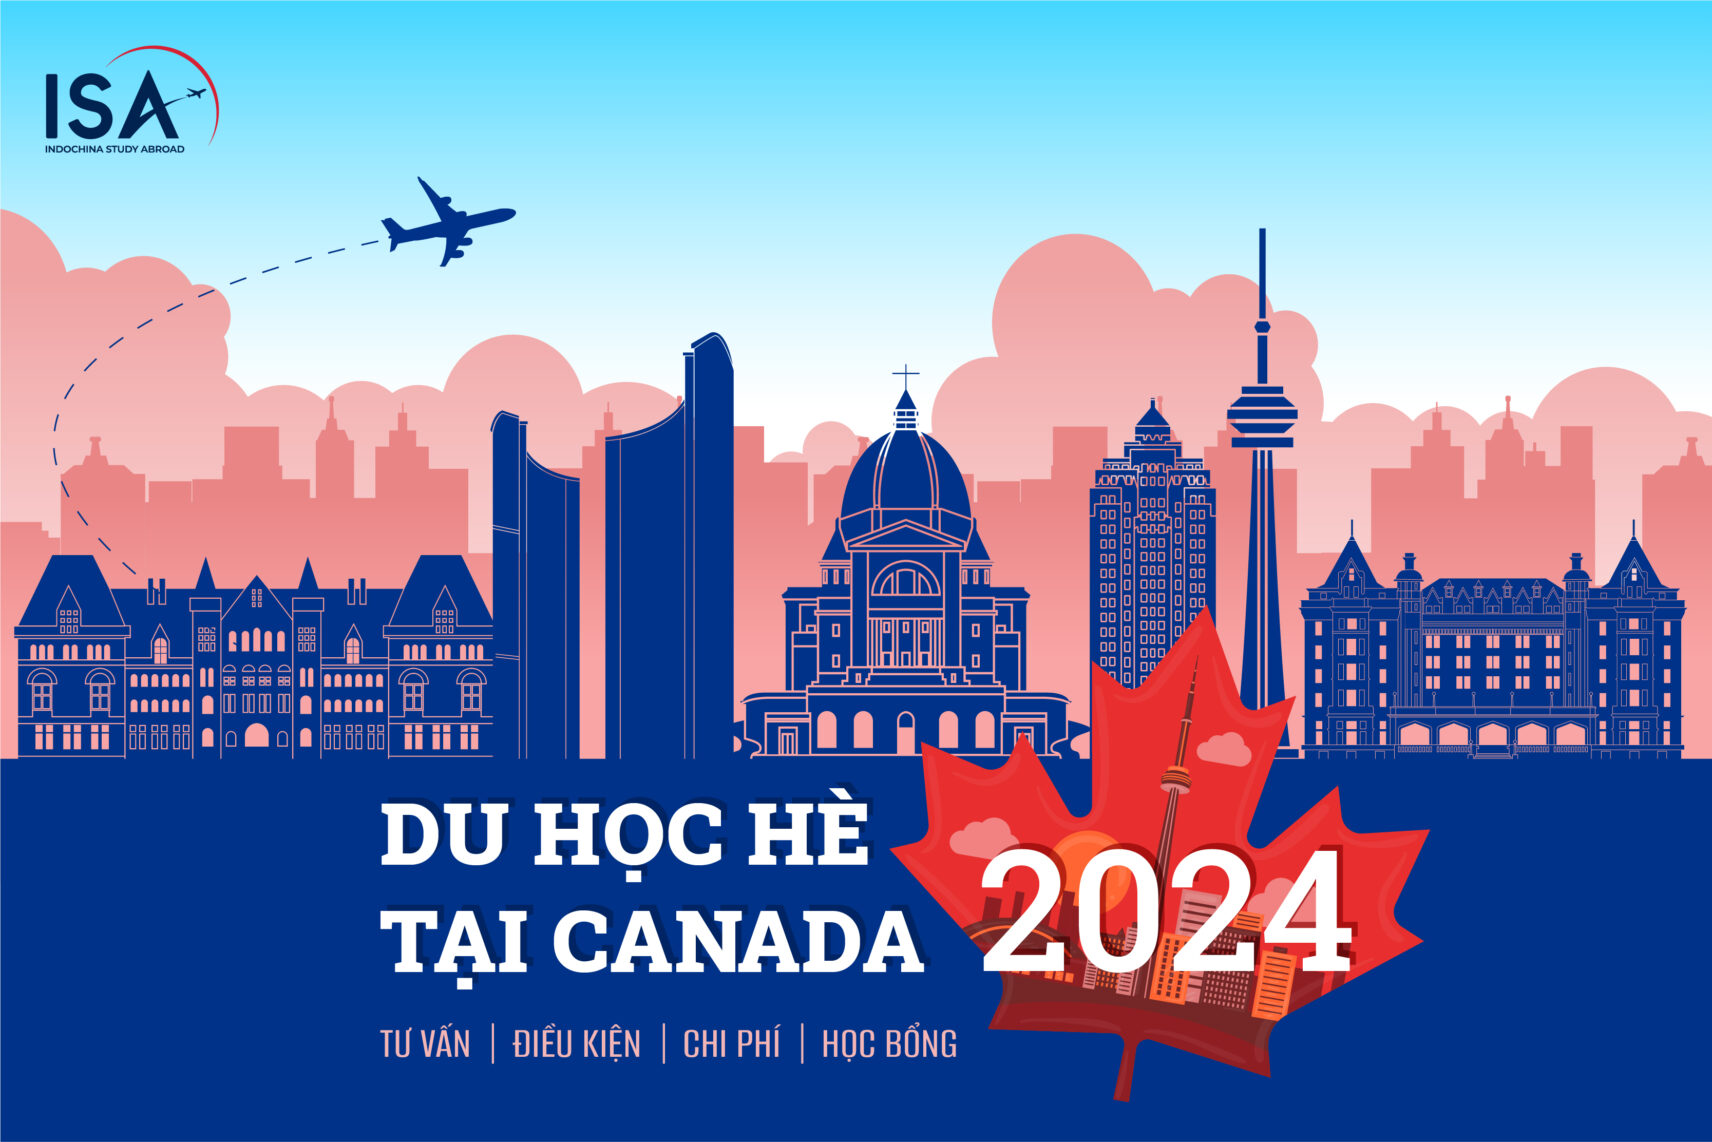 Du học hè tại Canada 2024: Khám phá cơ hội học tập và trải nghiệm văn hóa